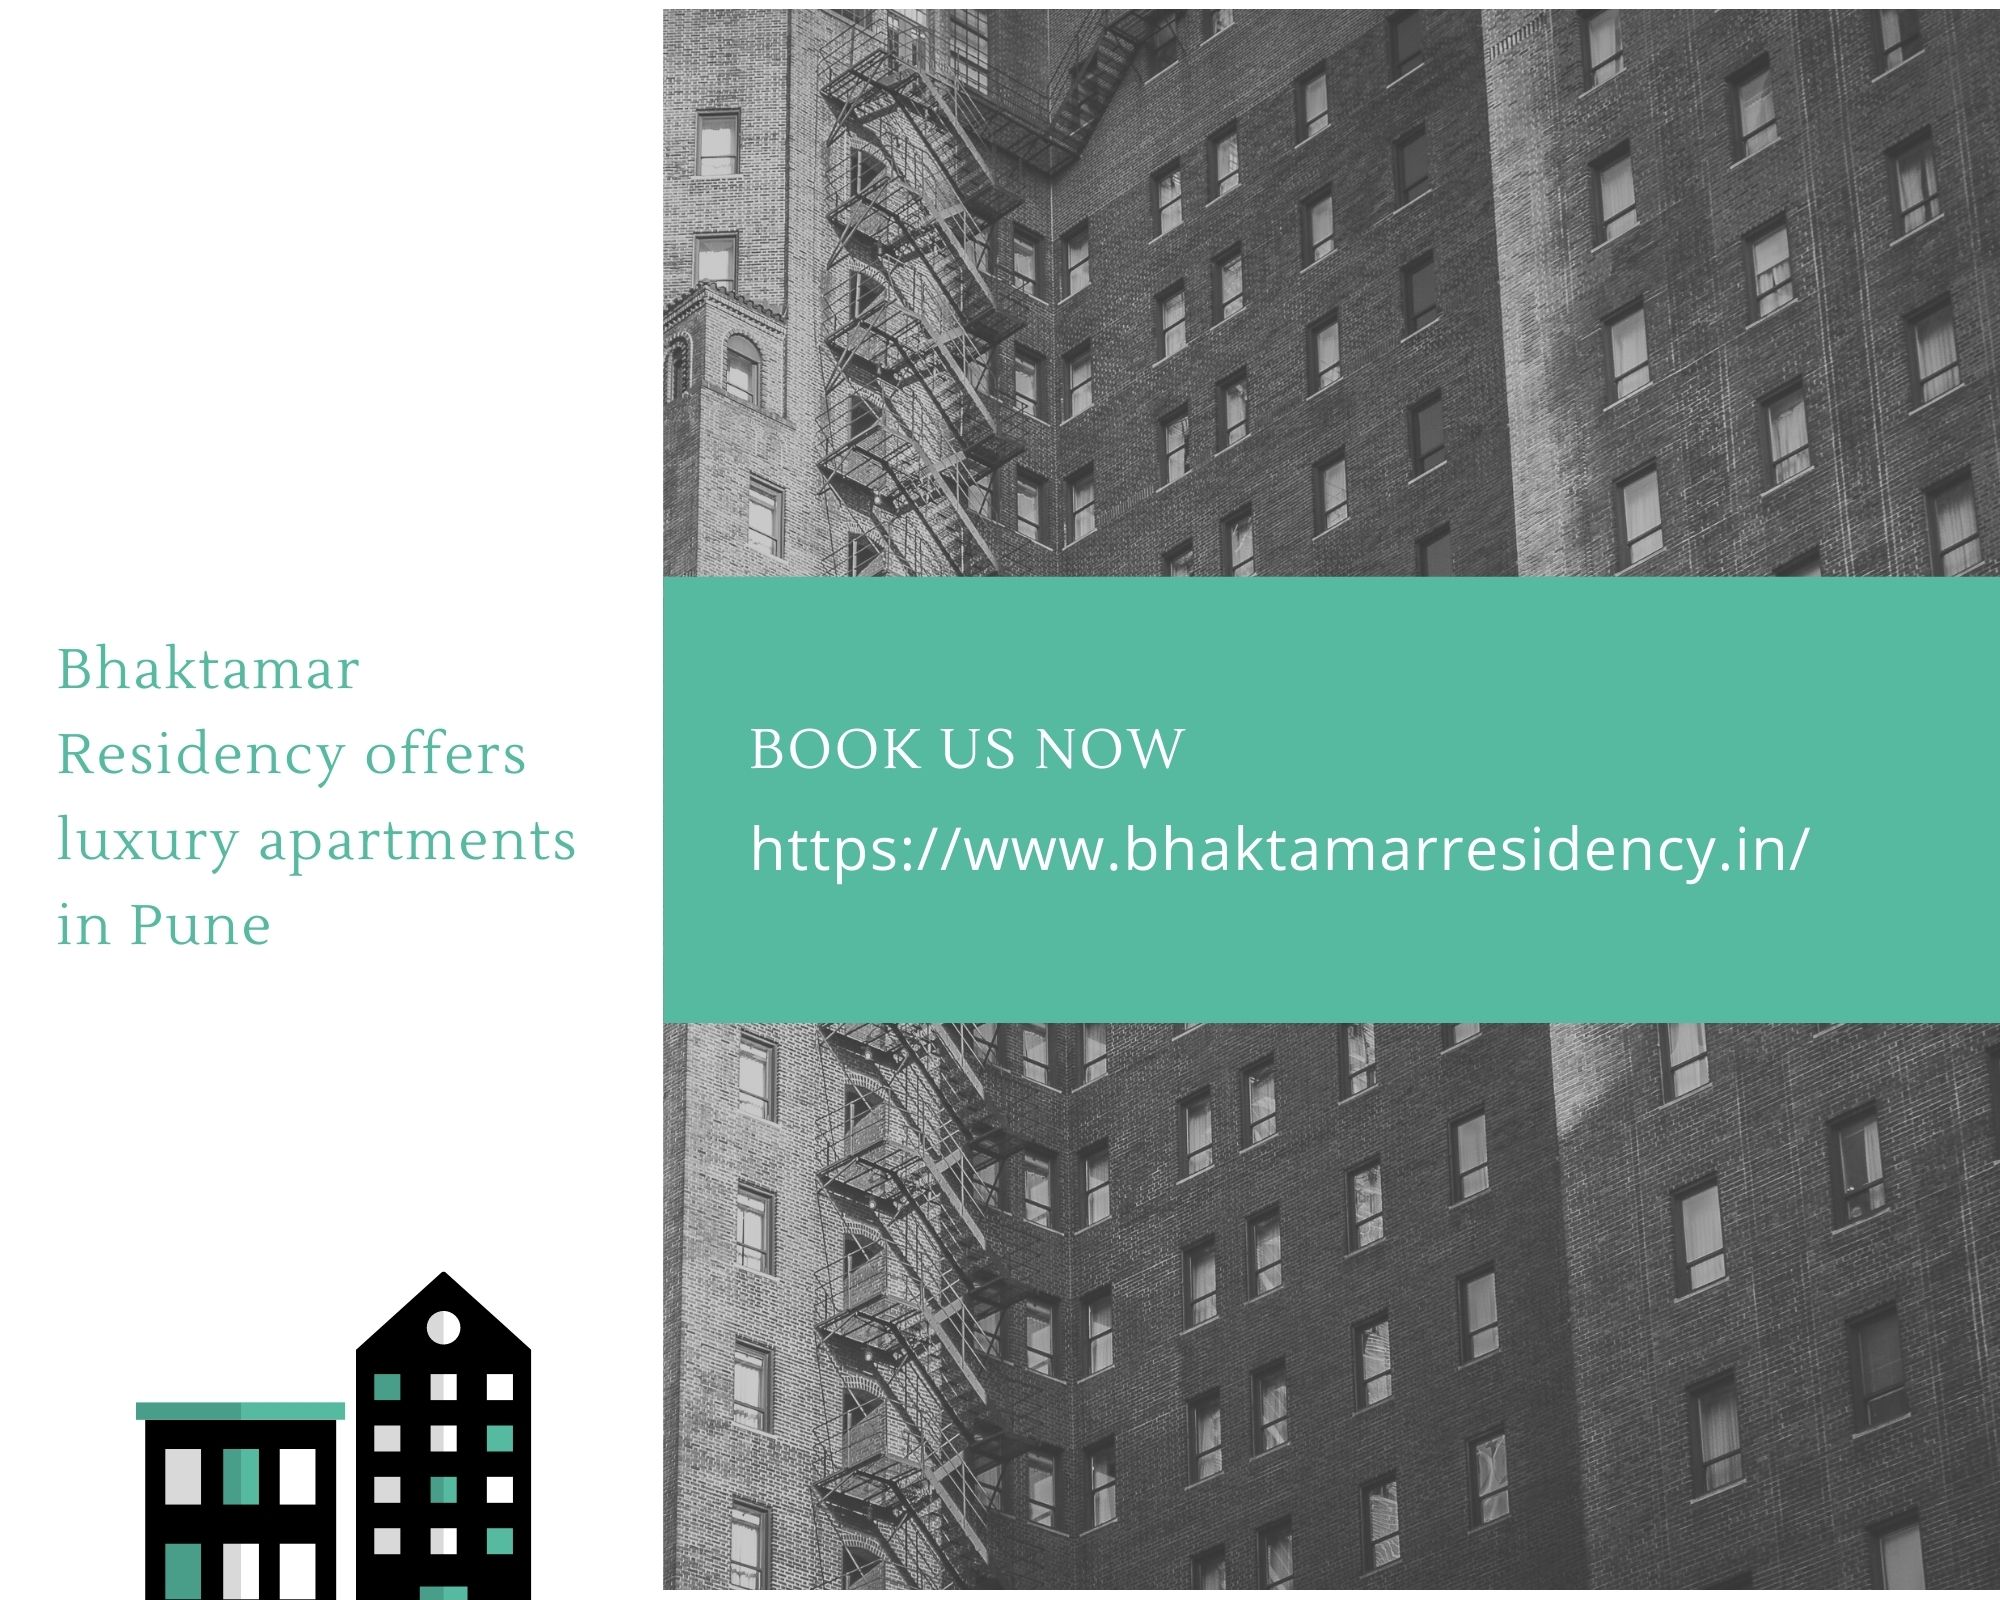 Bhaktamar Residency offers luxury apartments in Pune